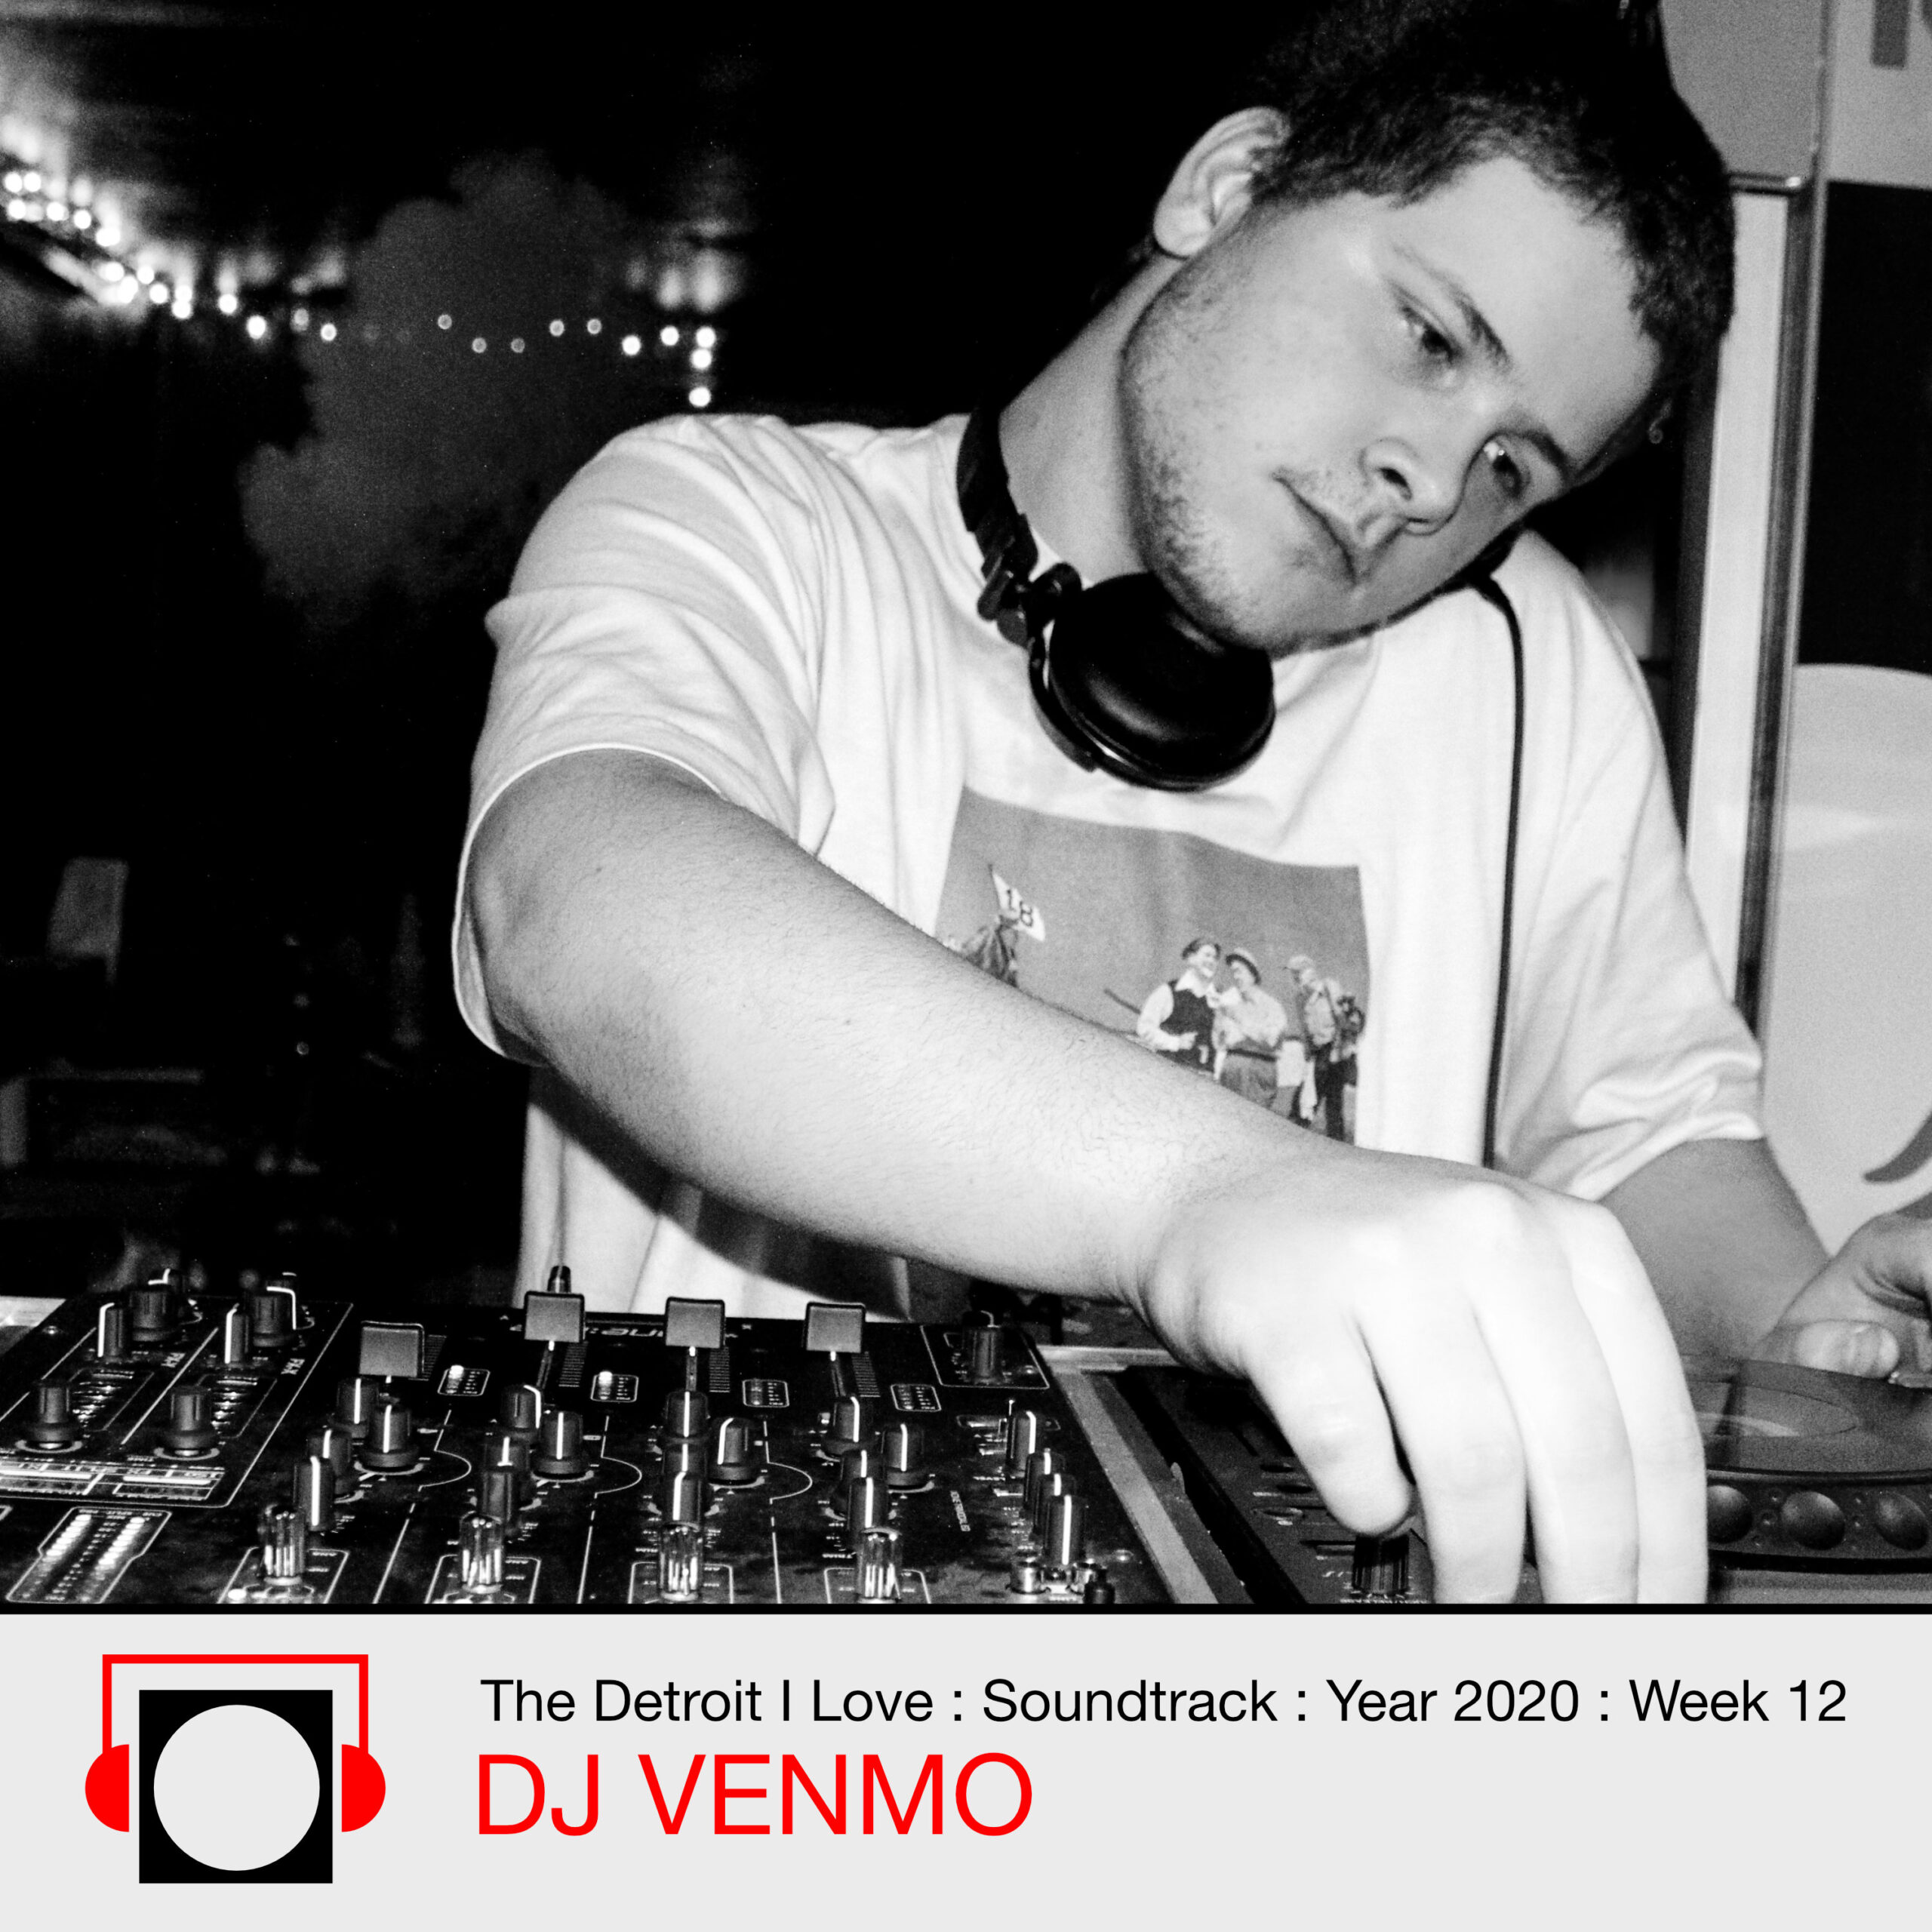 DJ Venmno